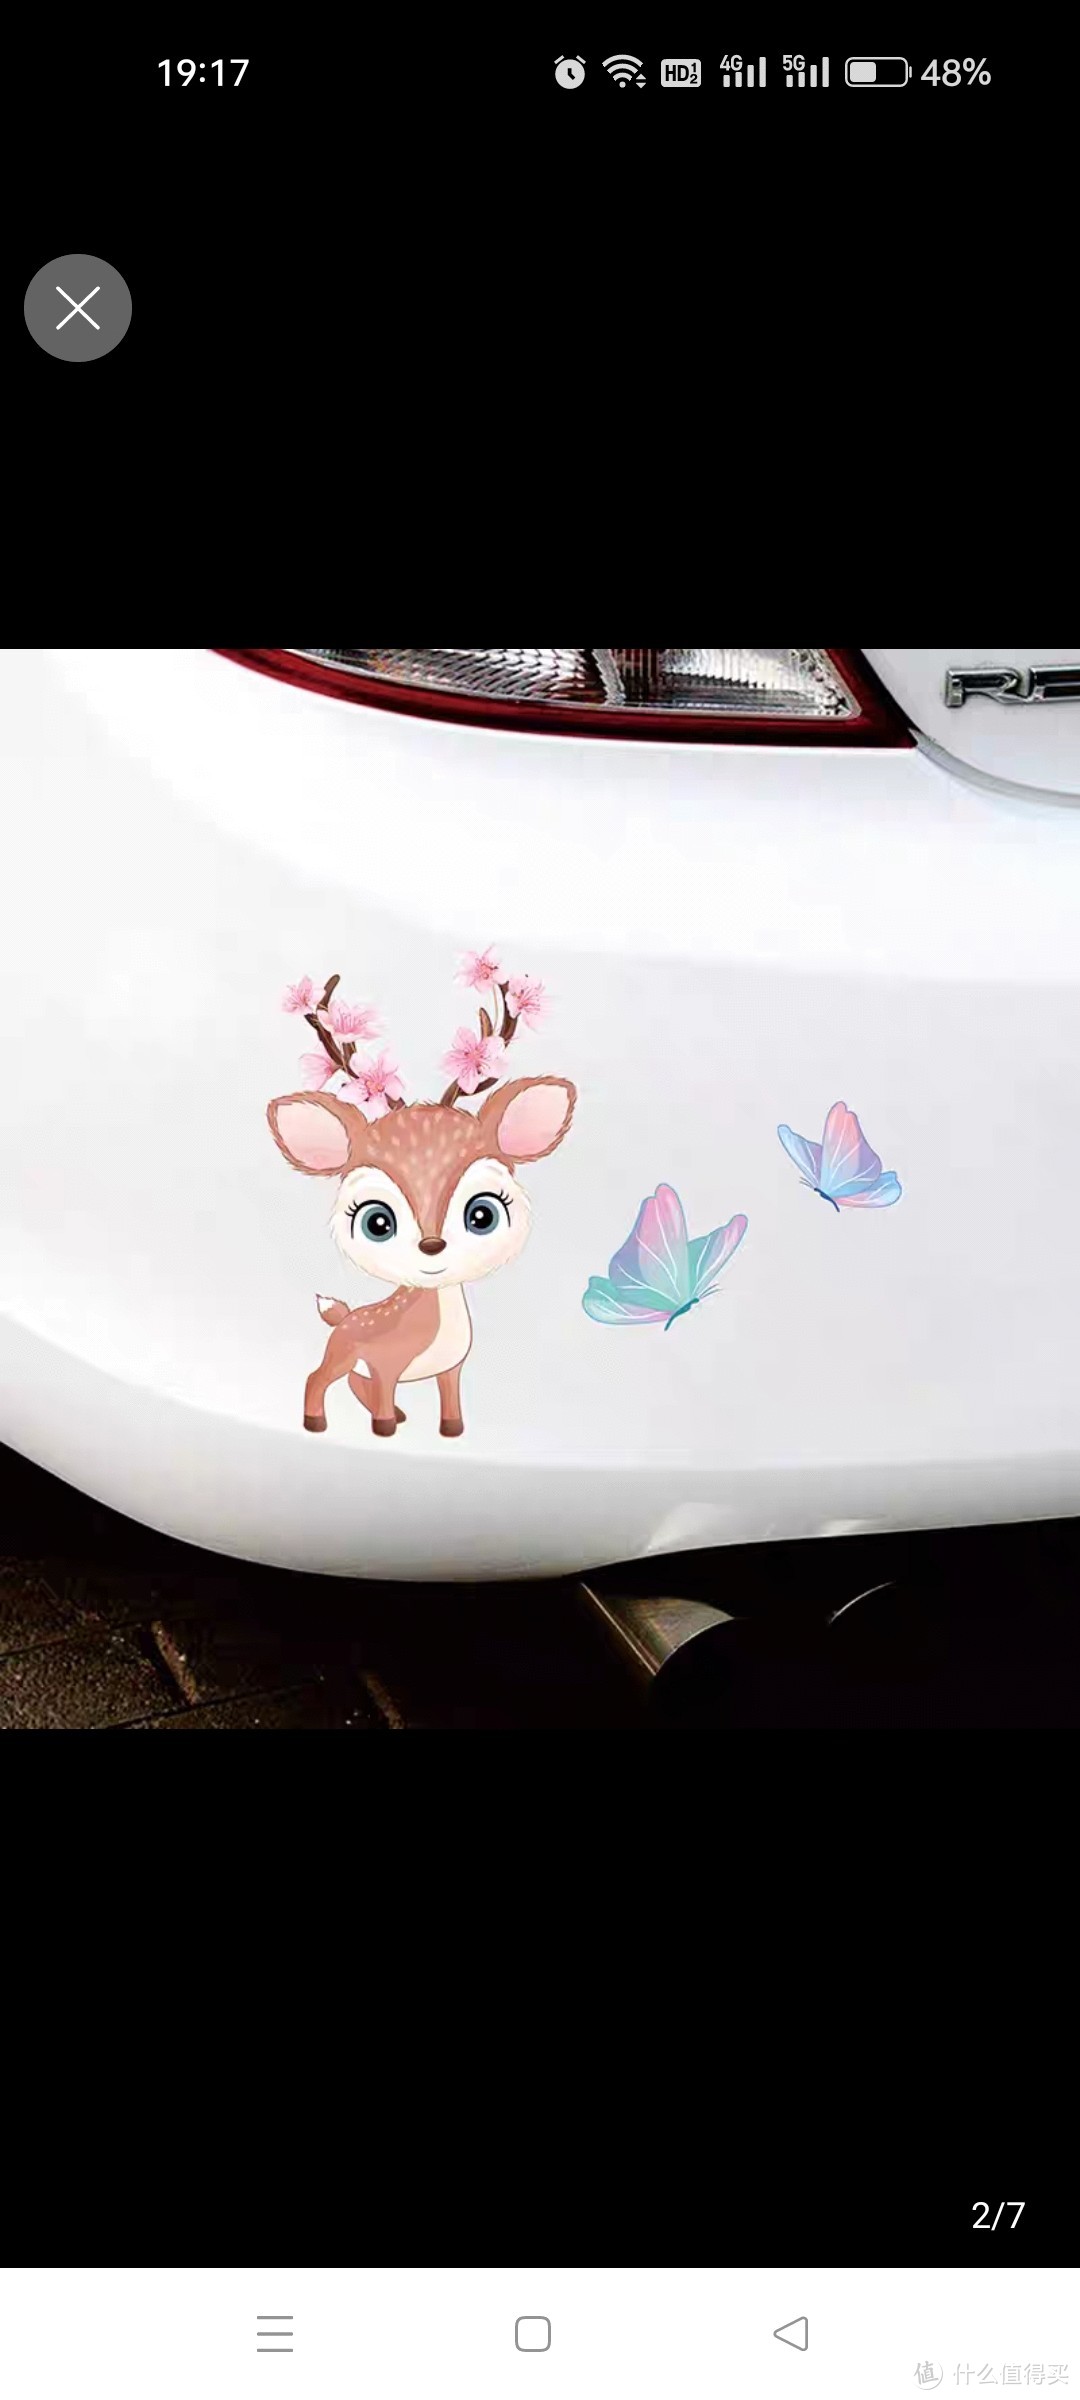 可爱动物图案汽车贴纸划痕遮挡遮盖贴画车身保险杠刮痕装饰电动车